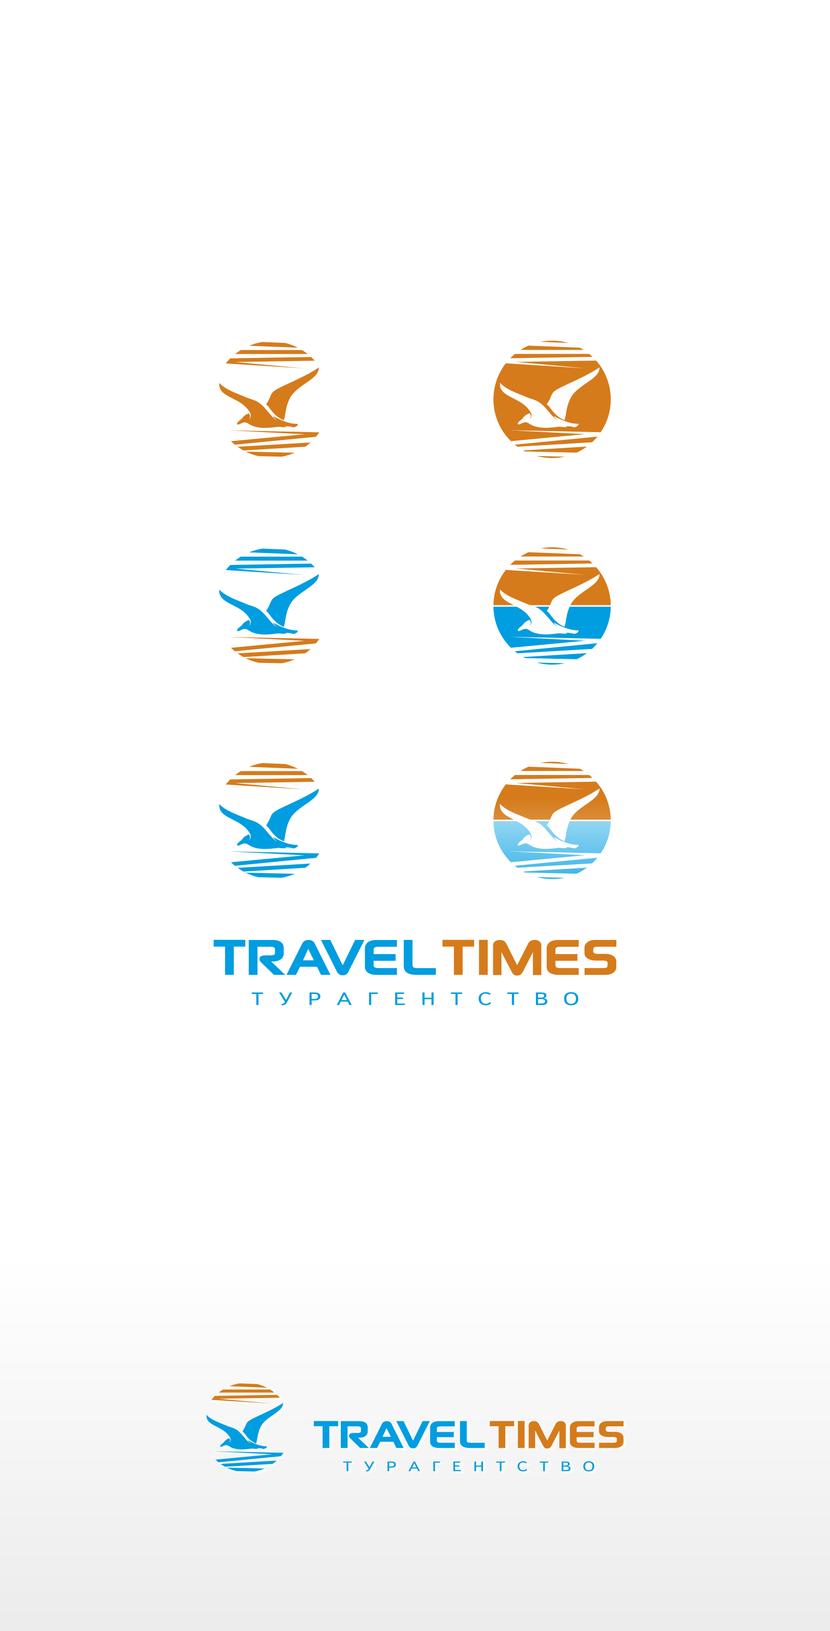 Варианты. - Создание логотипа для туристической компании (розничная сеть).